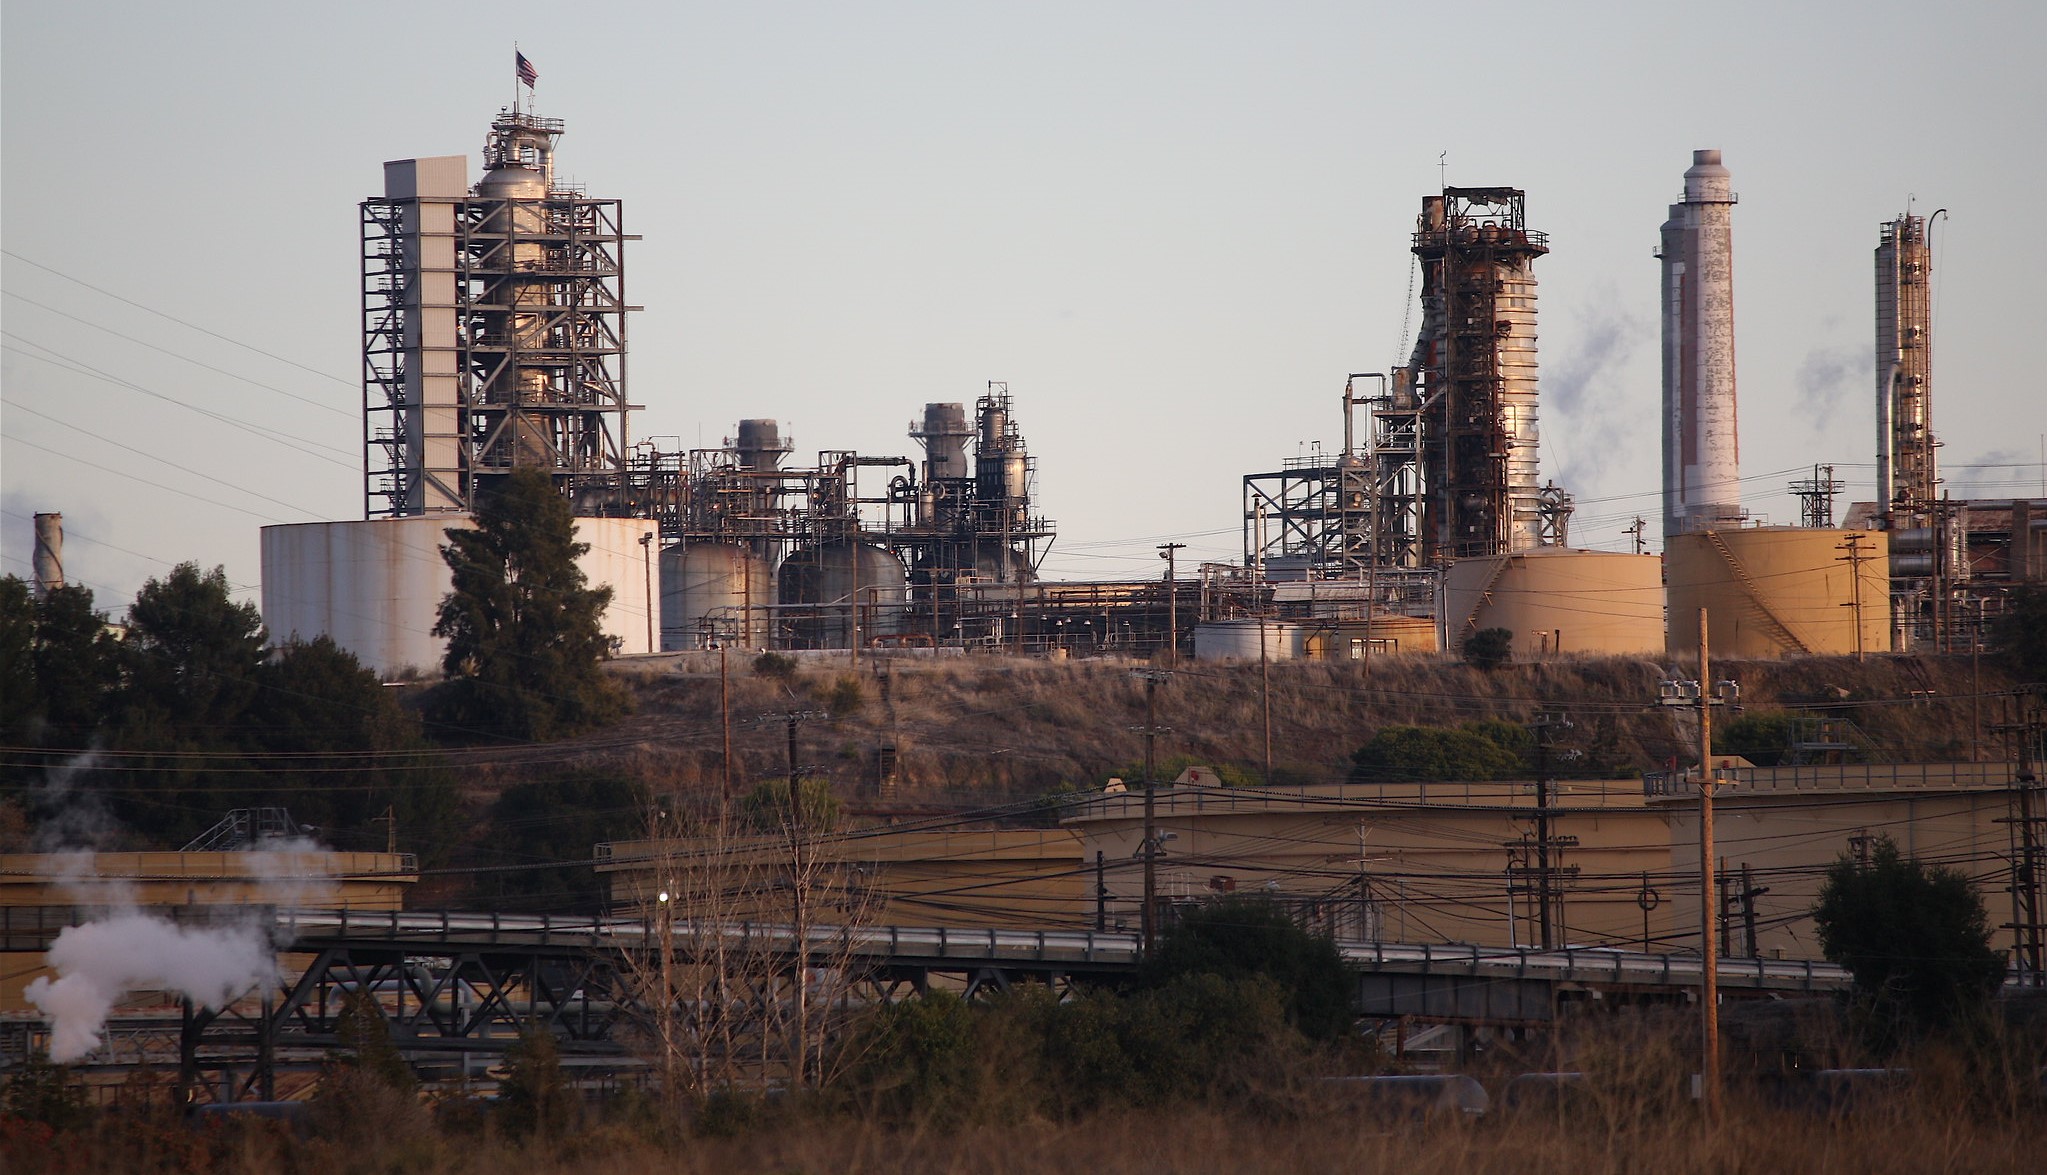 Martinez refinery with a grey sky.